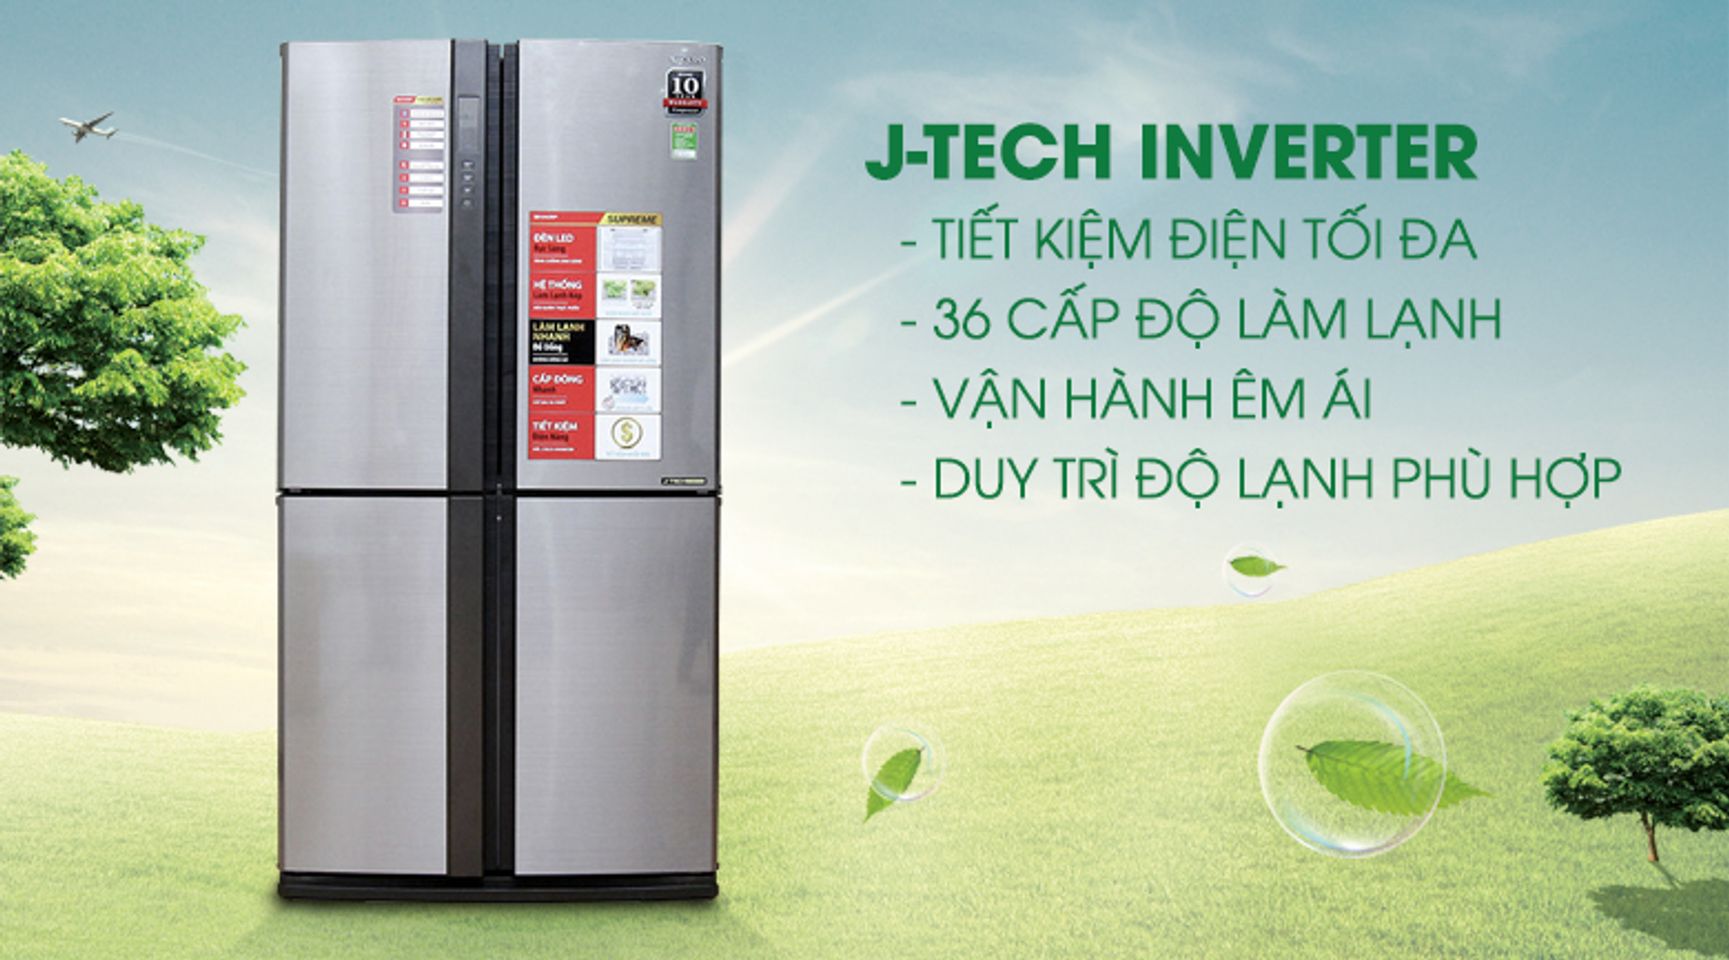 Tủ lạnh side by side - Công nghệ J-Tech Inverter vận hành bền bỉ